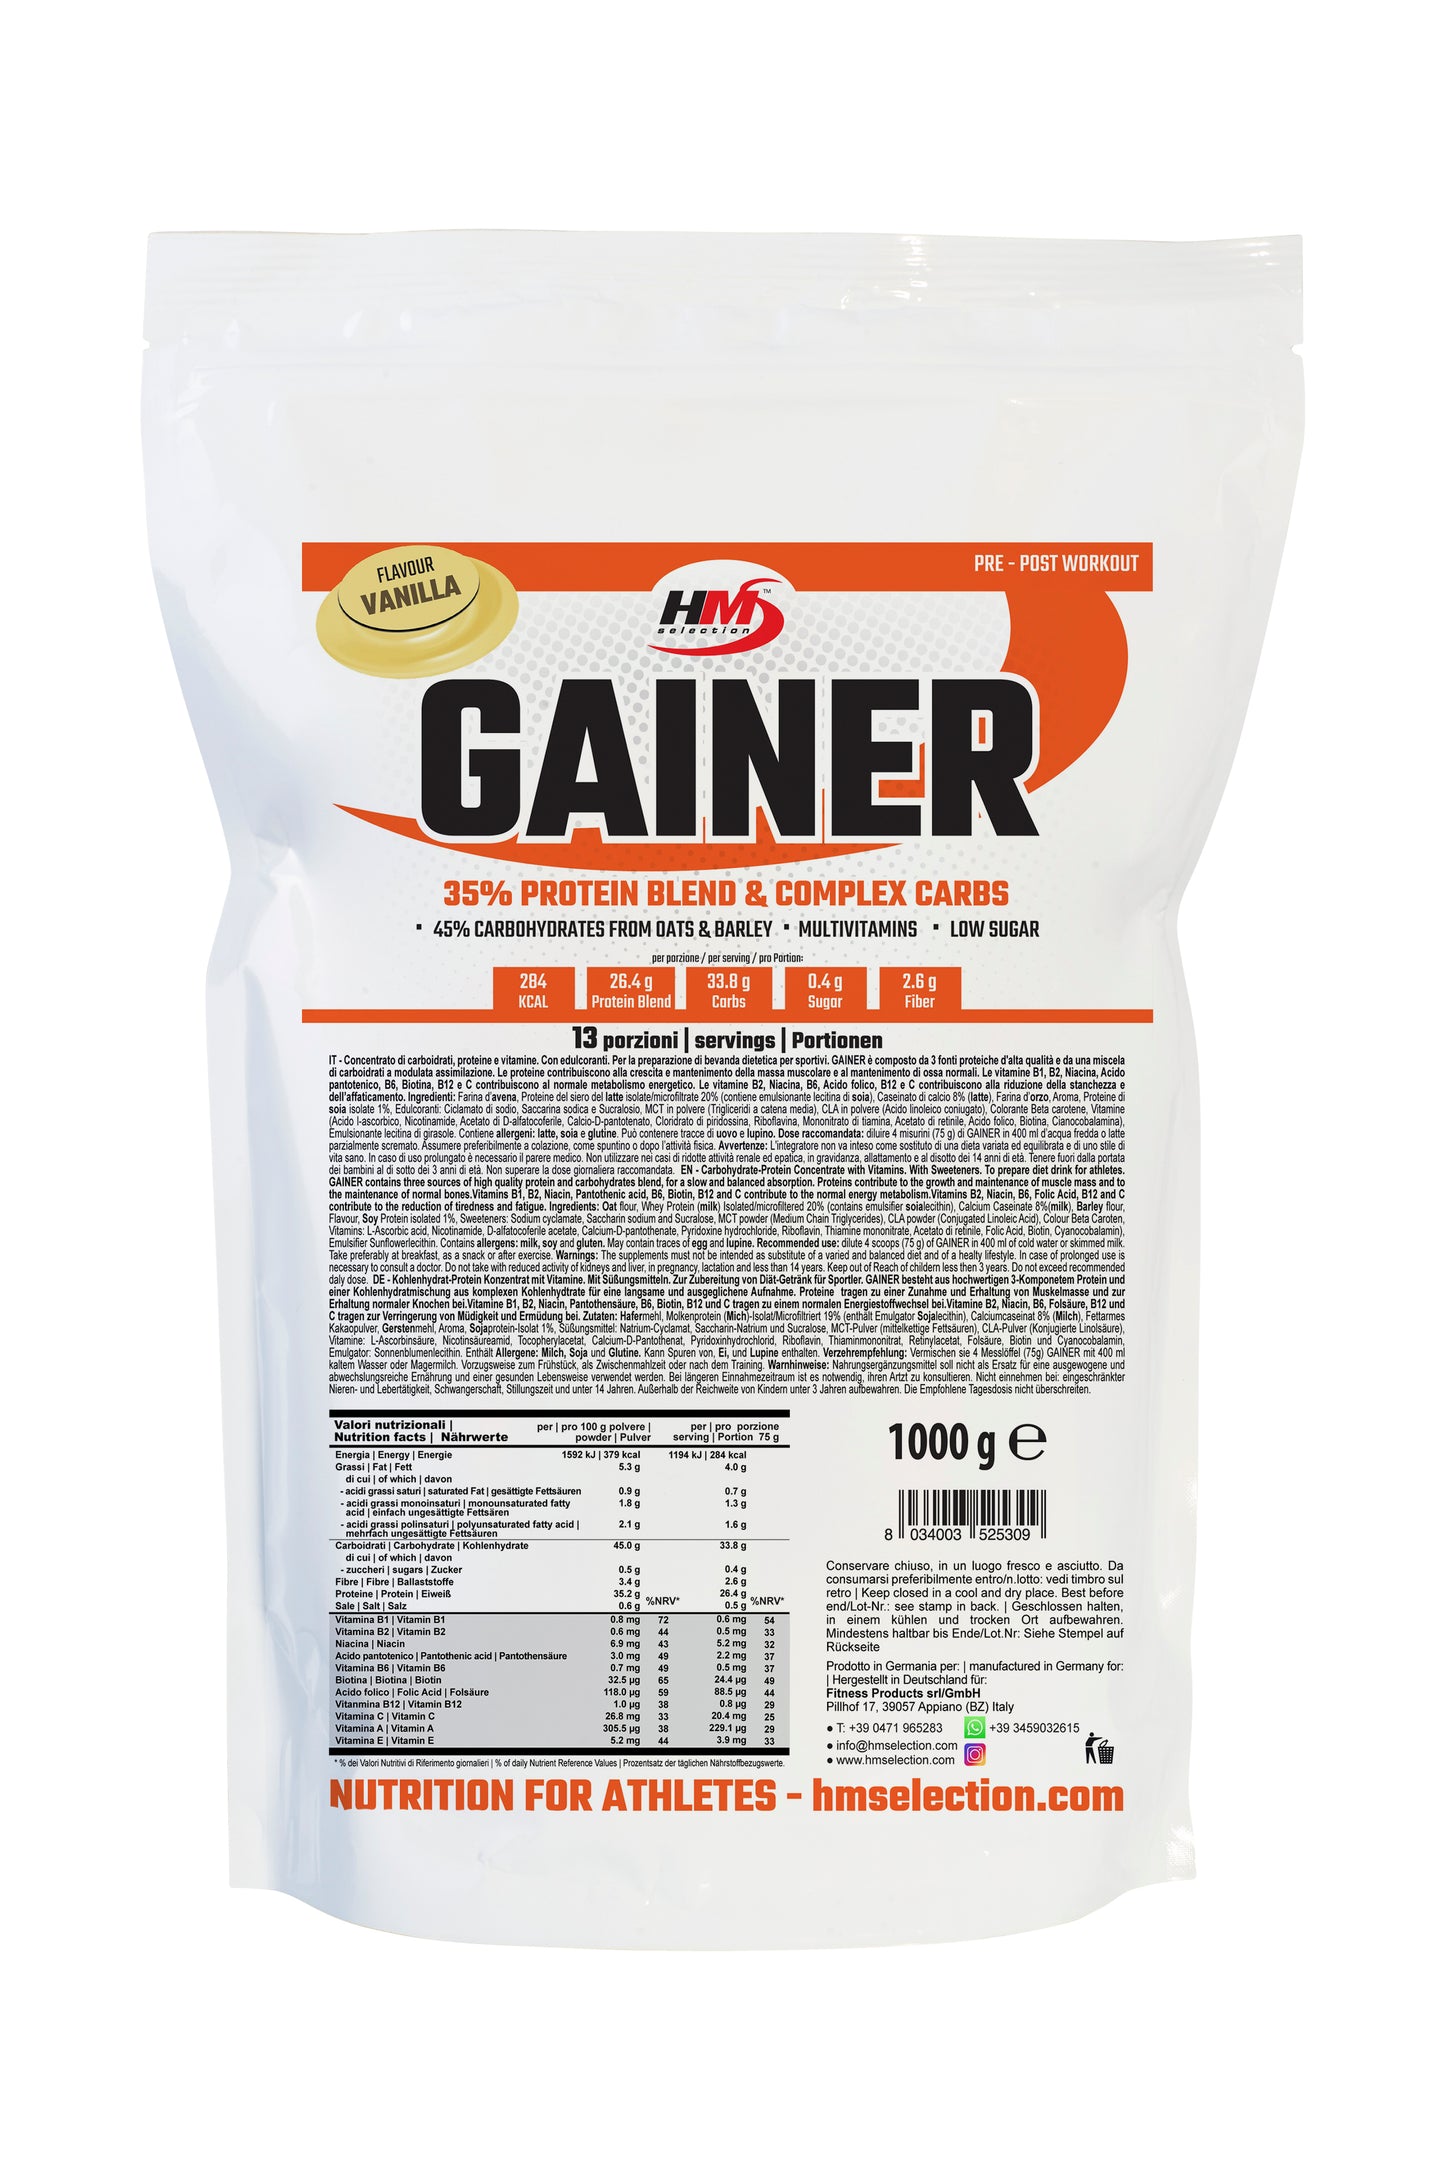 GAINER, 1000g - concentrato a base di carboidrati, proteine, vitamine e minerali